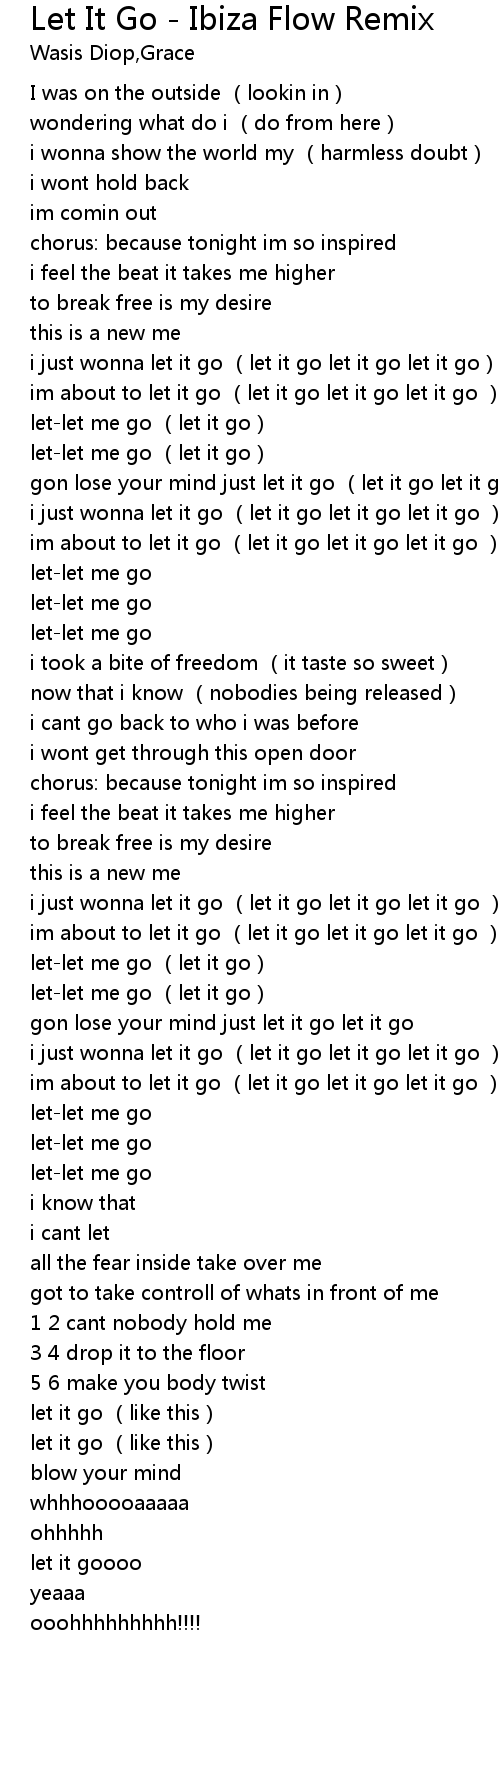 Let It Go Ibiza Flow Remix Lyrics Follow Lyrics